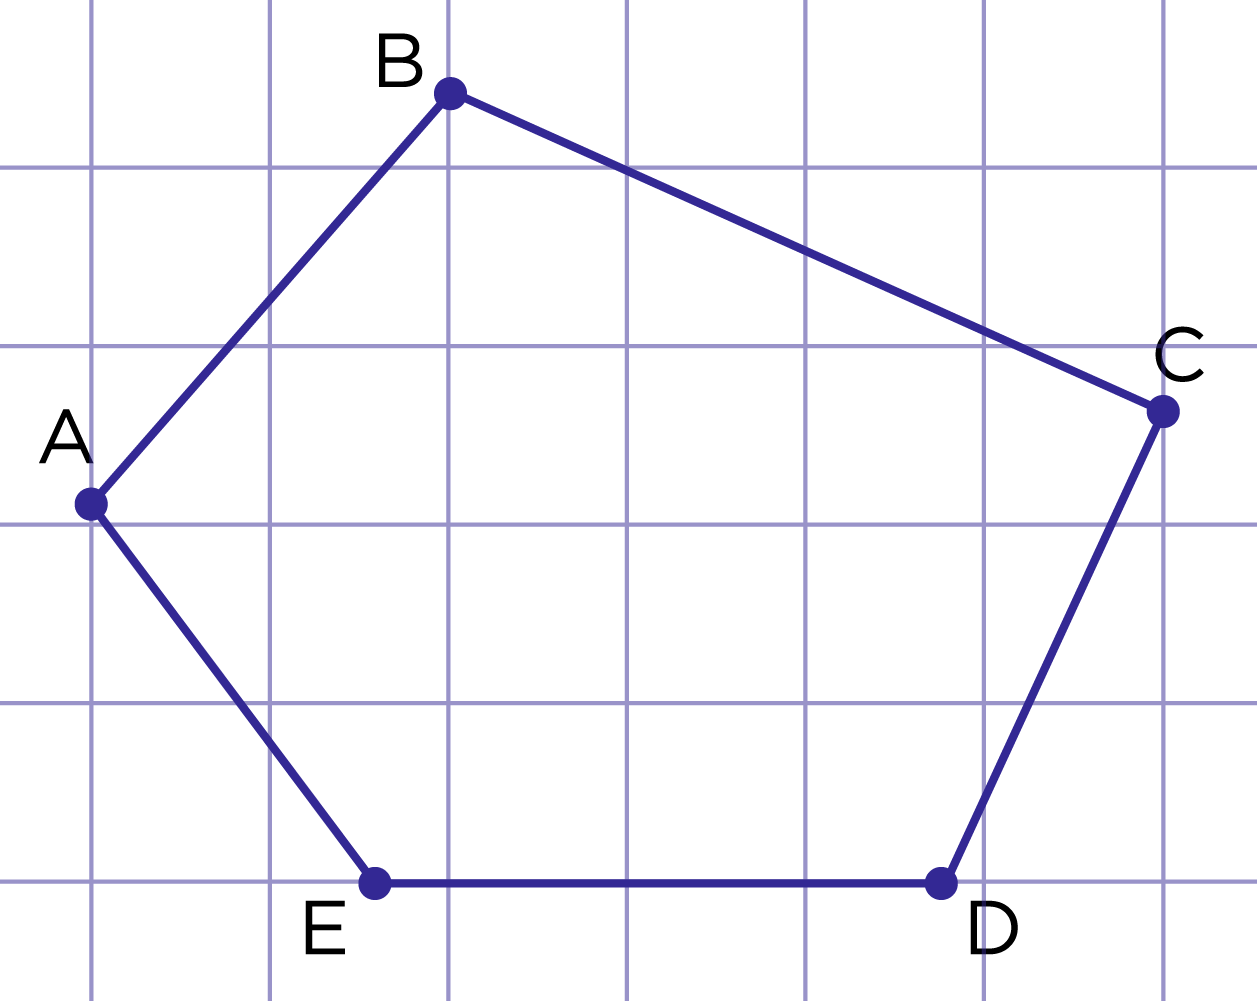 Вектор суммы многоугольника